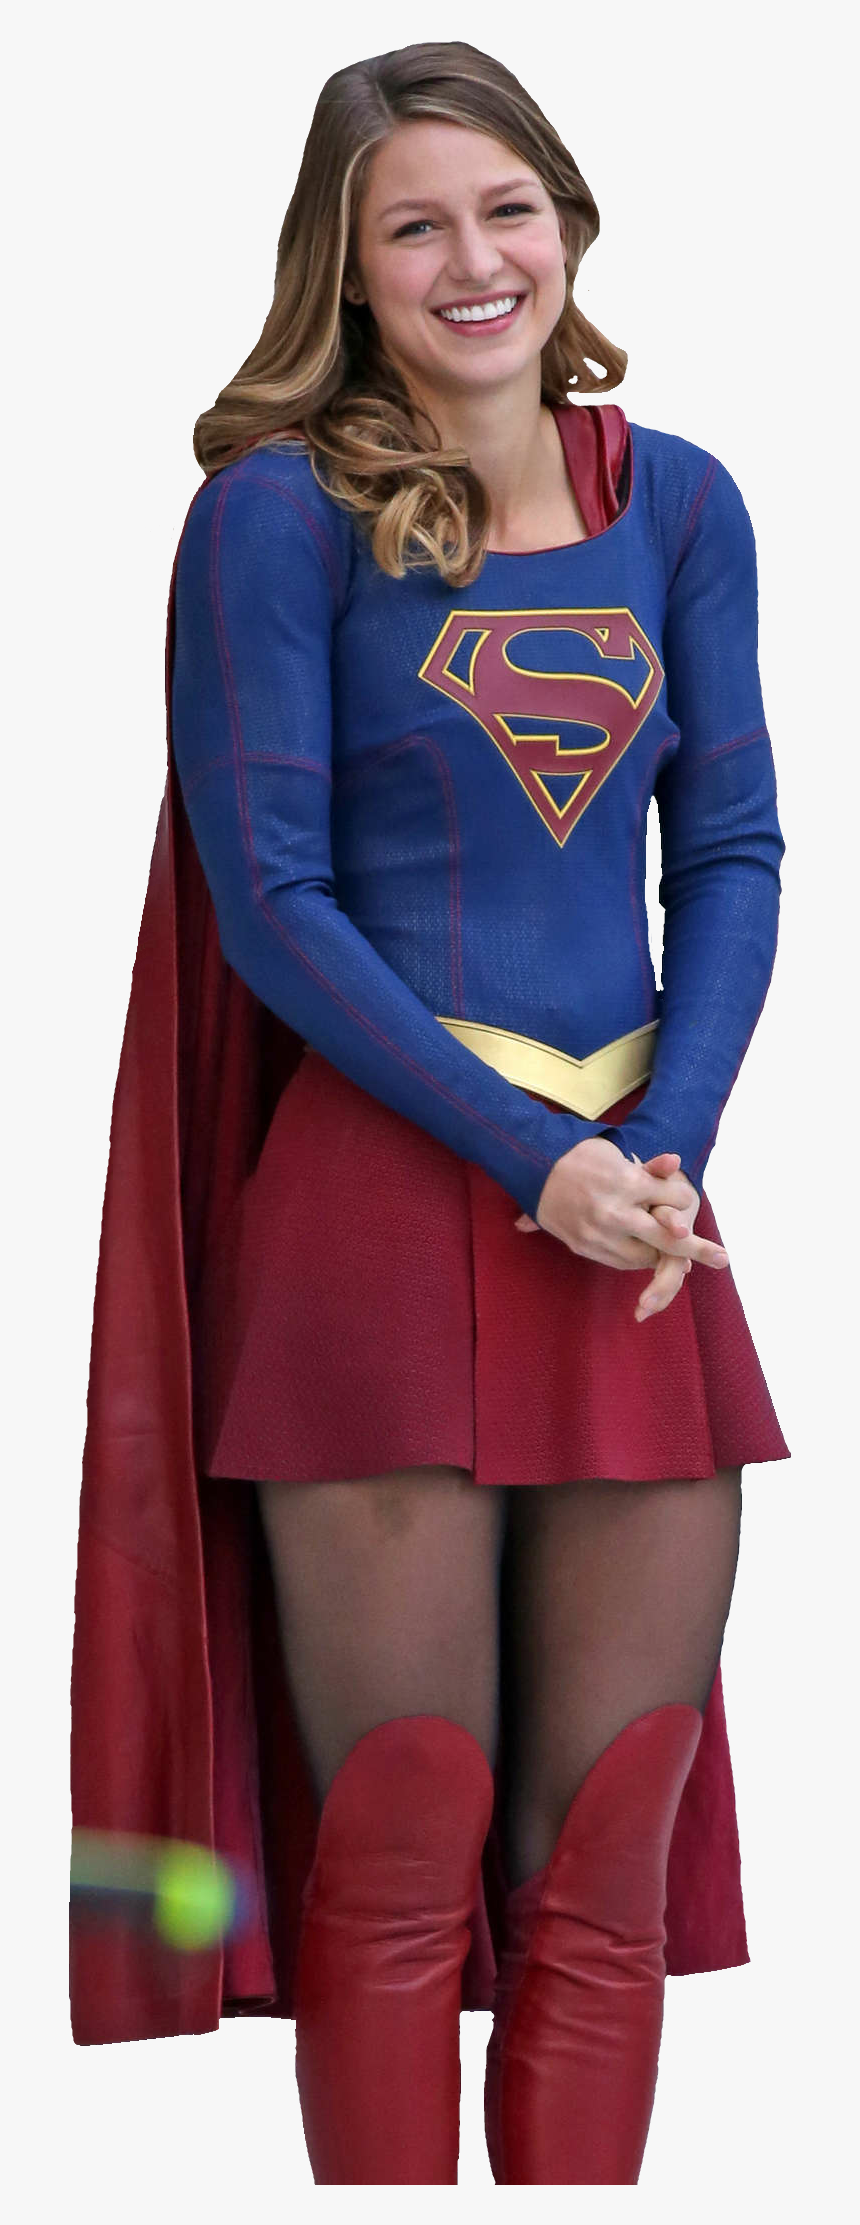 Sexy supergirl photos